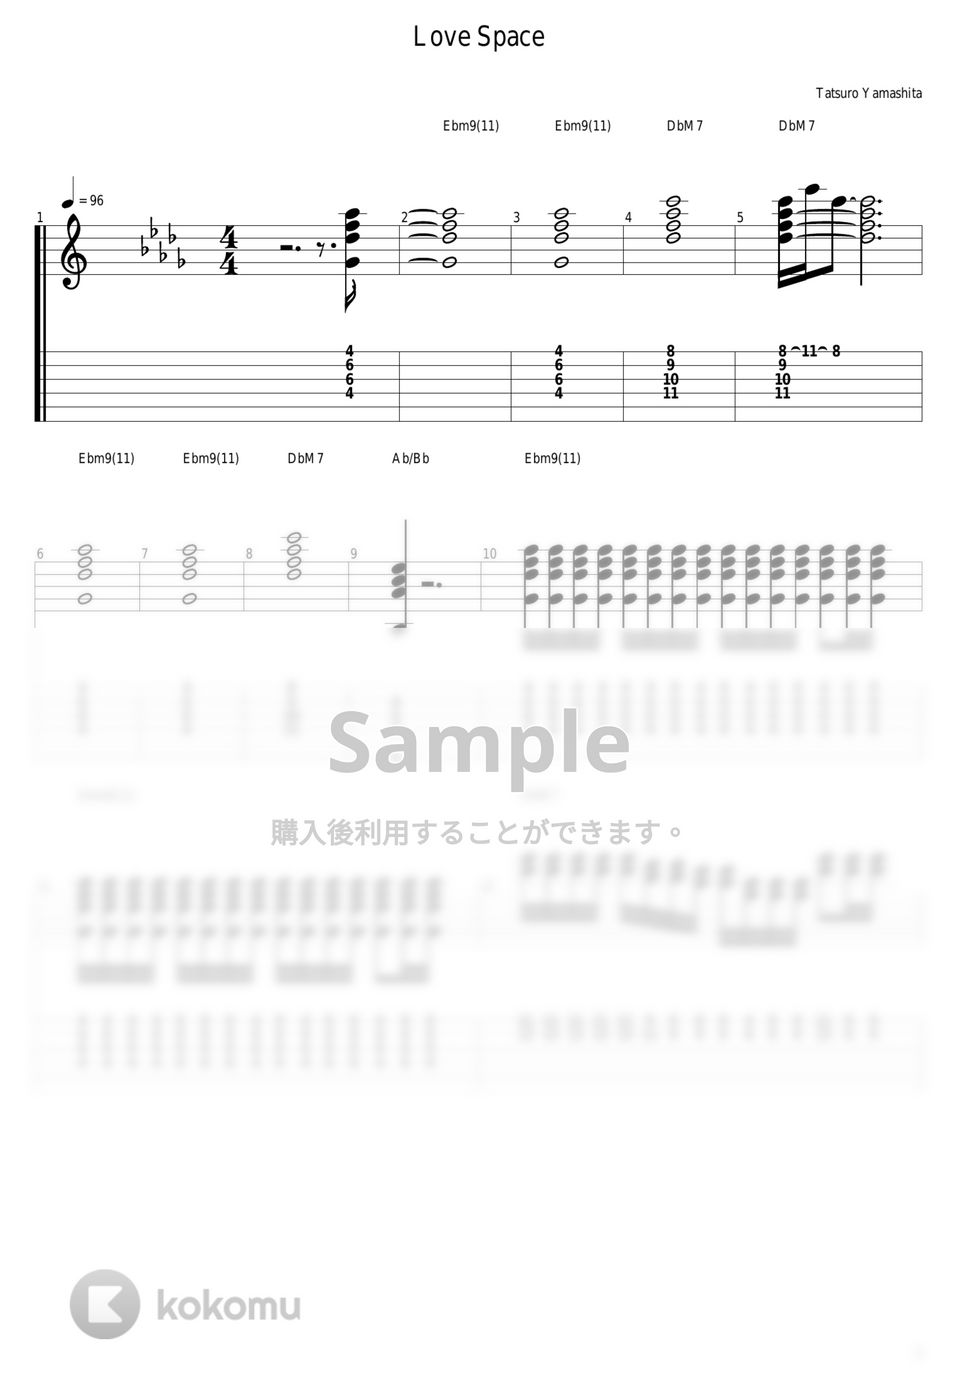 山下達郎 - Love Space by guitar cover with tab